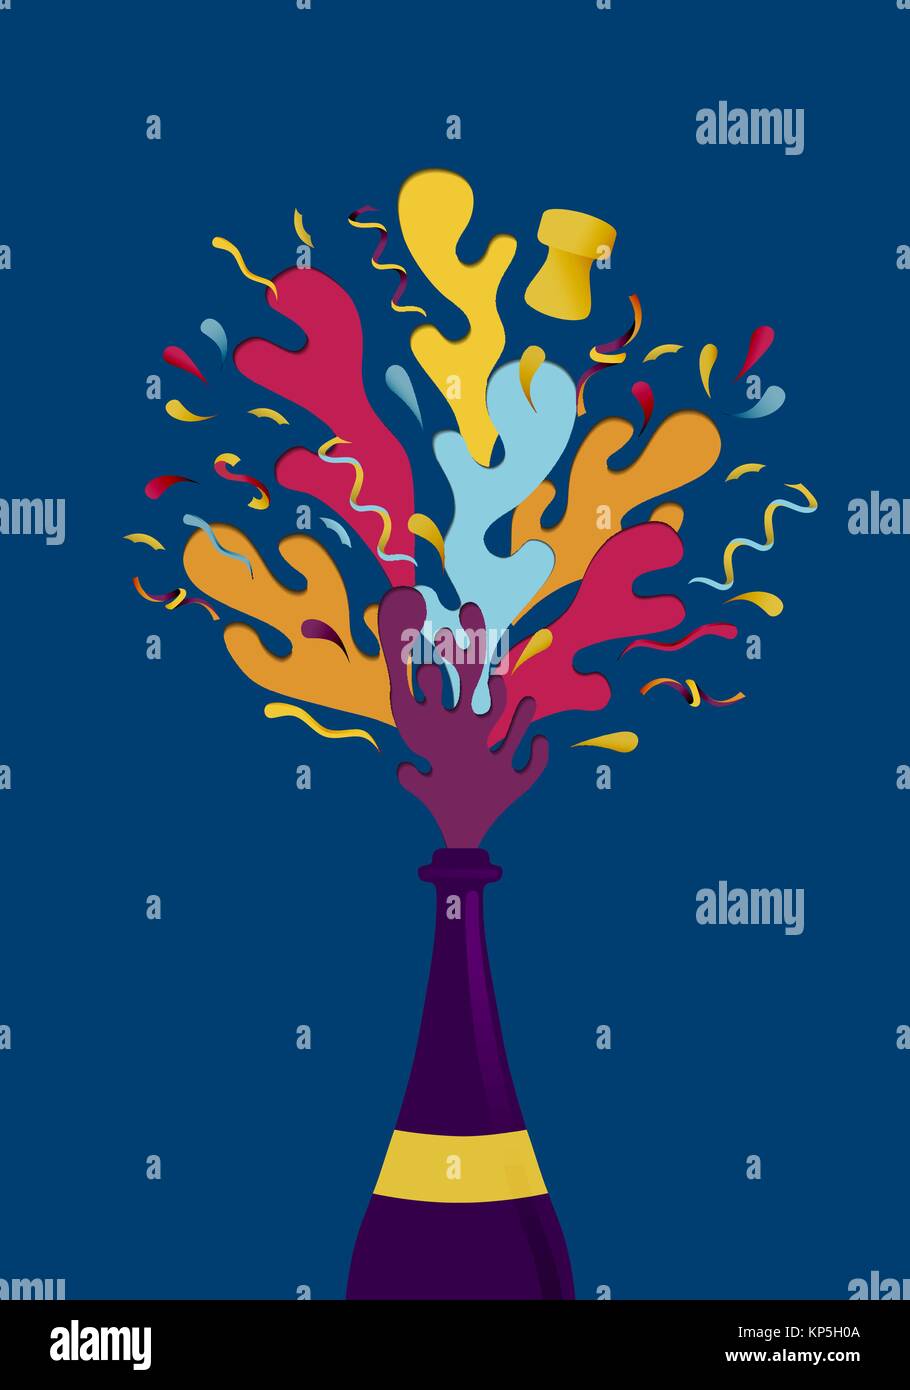 Frohes Neues Jahr Abbildung: Champagner Flasche mit bunten Konfetti Explosion. Ideal für Urlaub Grußkarte oder Party Einladung. EPS 10 Vektor. Stock Vektor